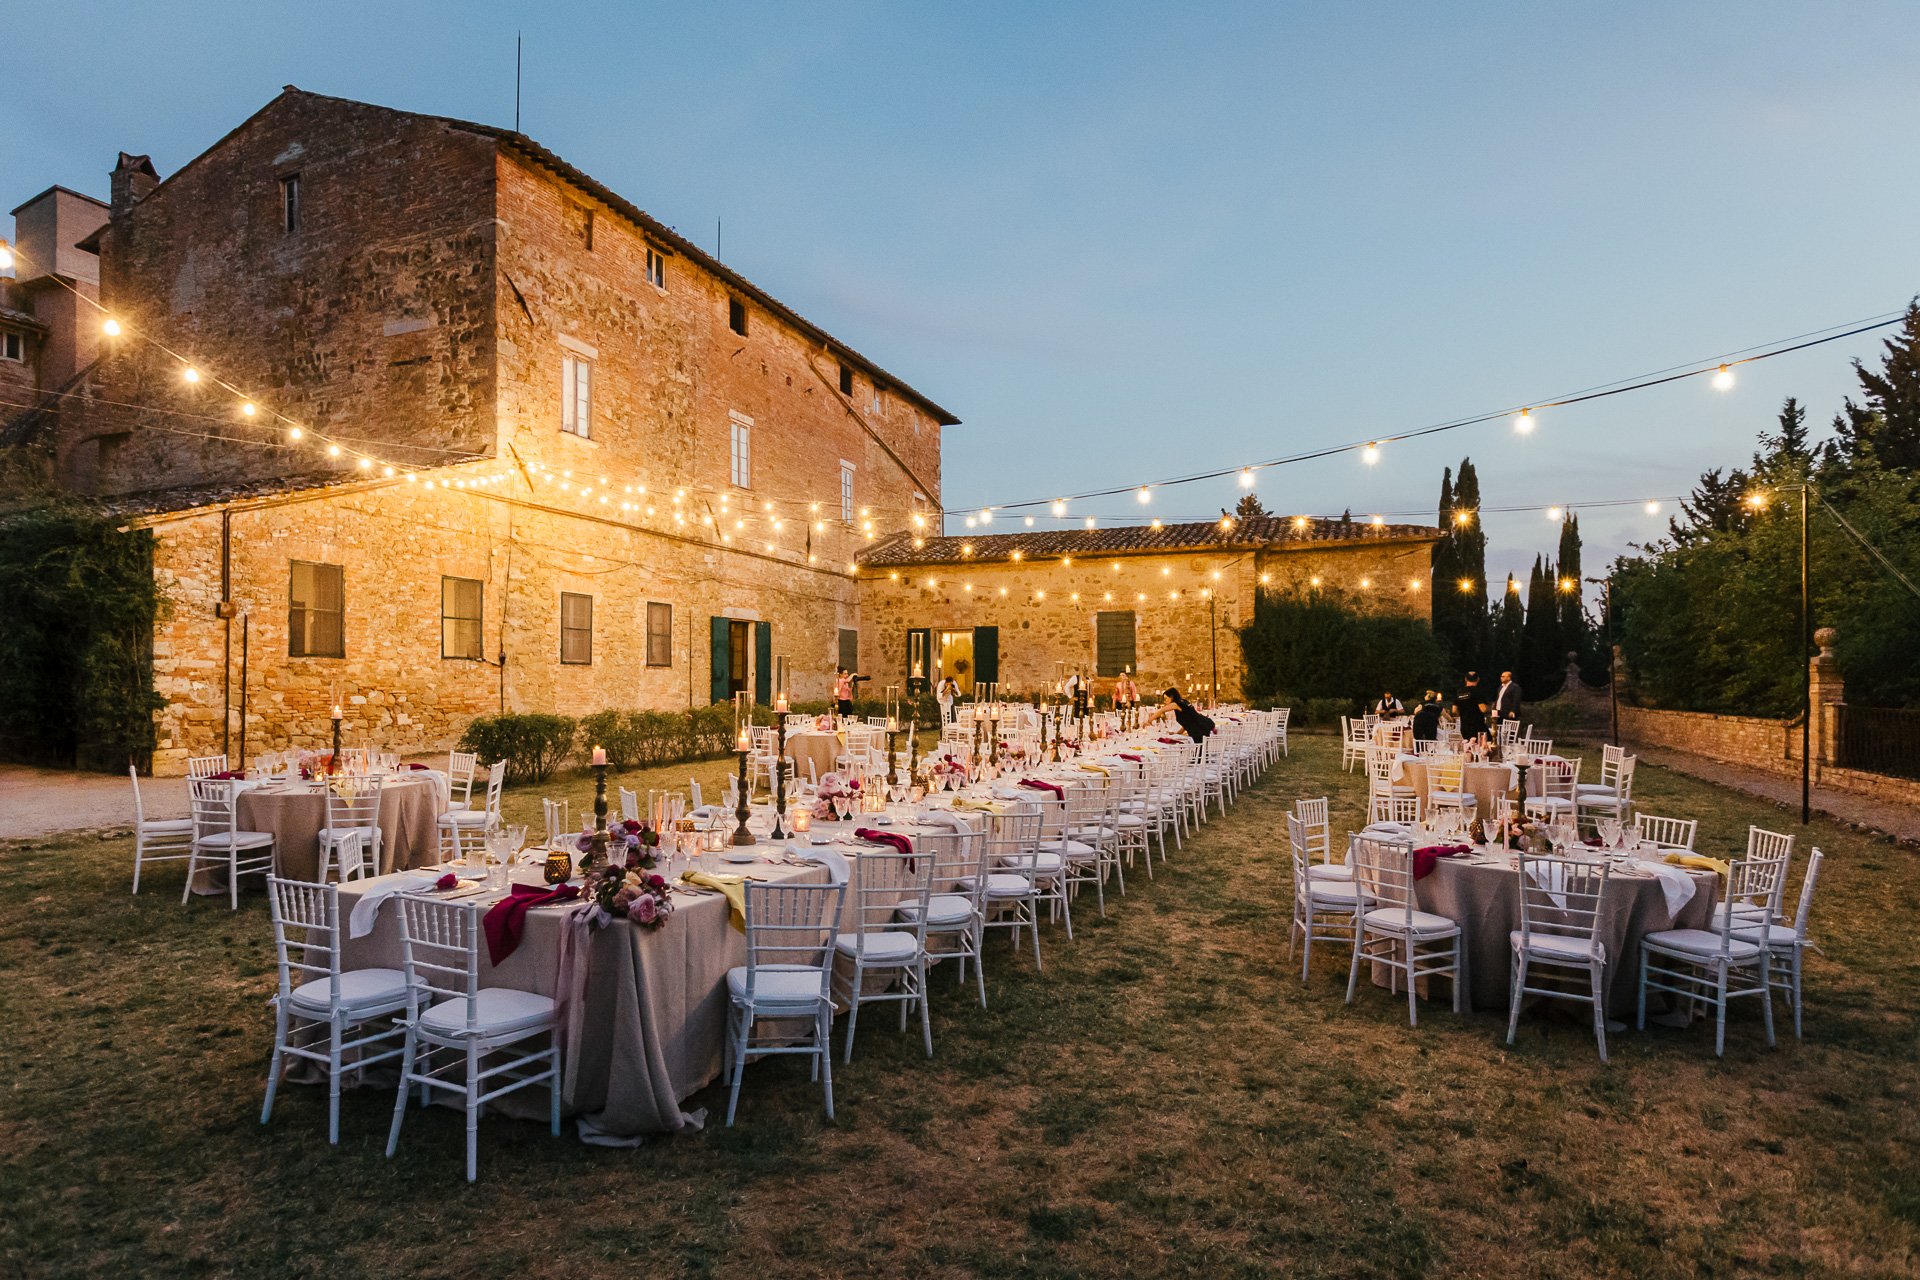 Matrimonio etnico chic Giulia Barabani wedding planner in Umbria